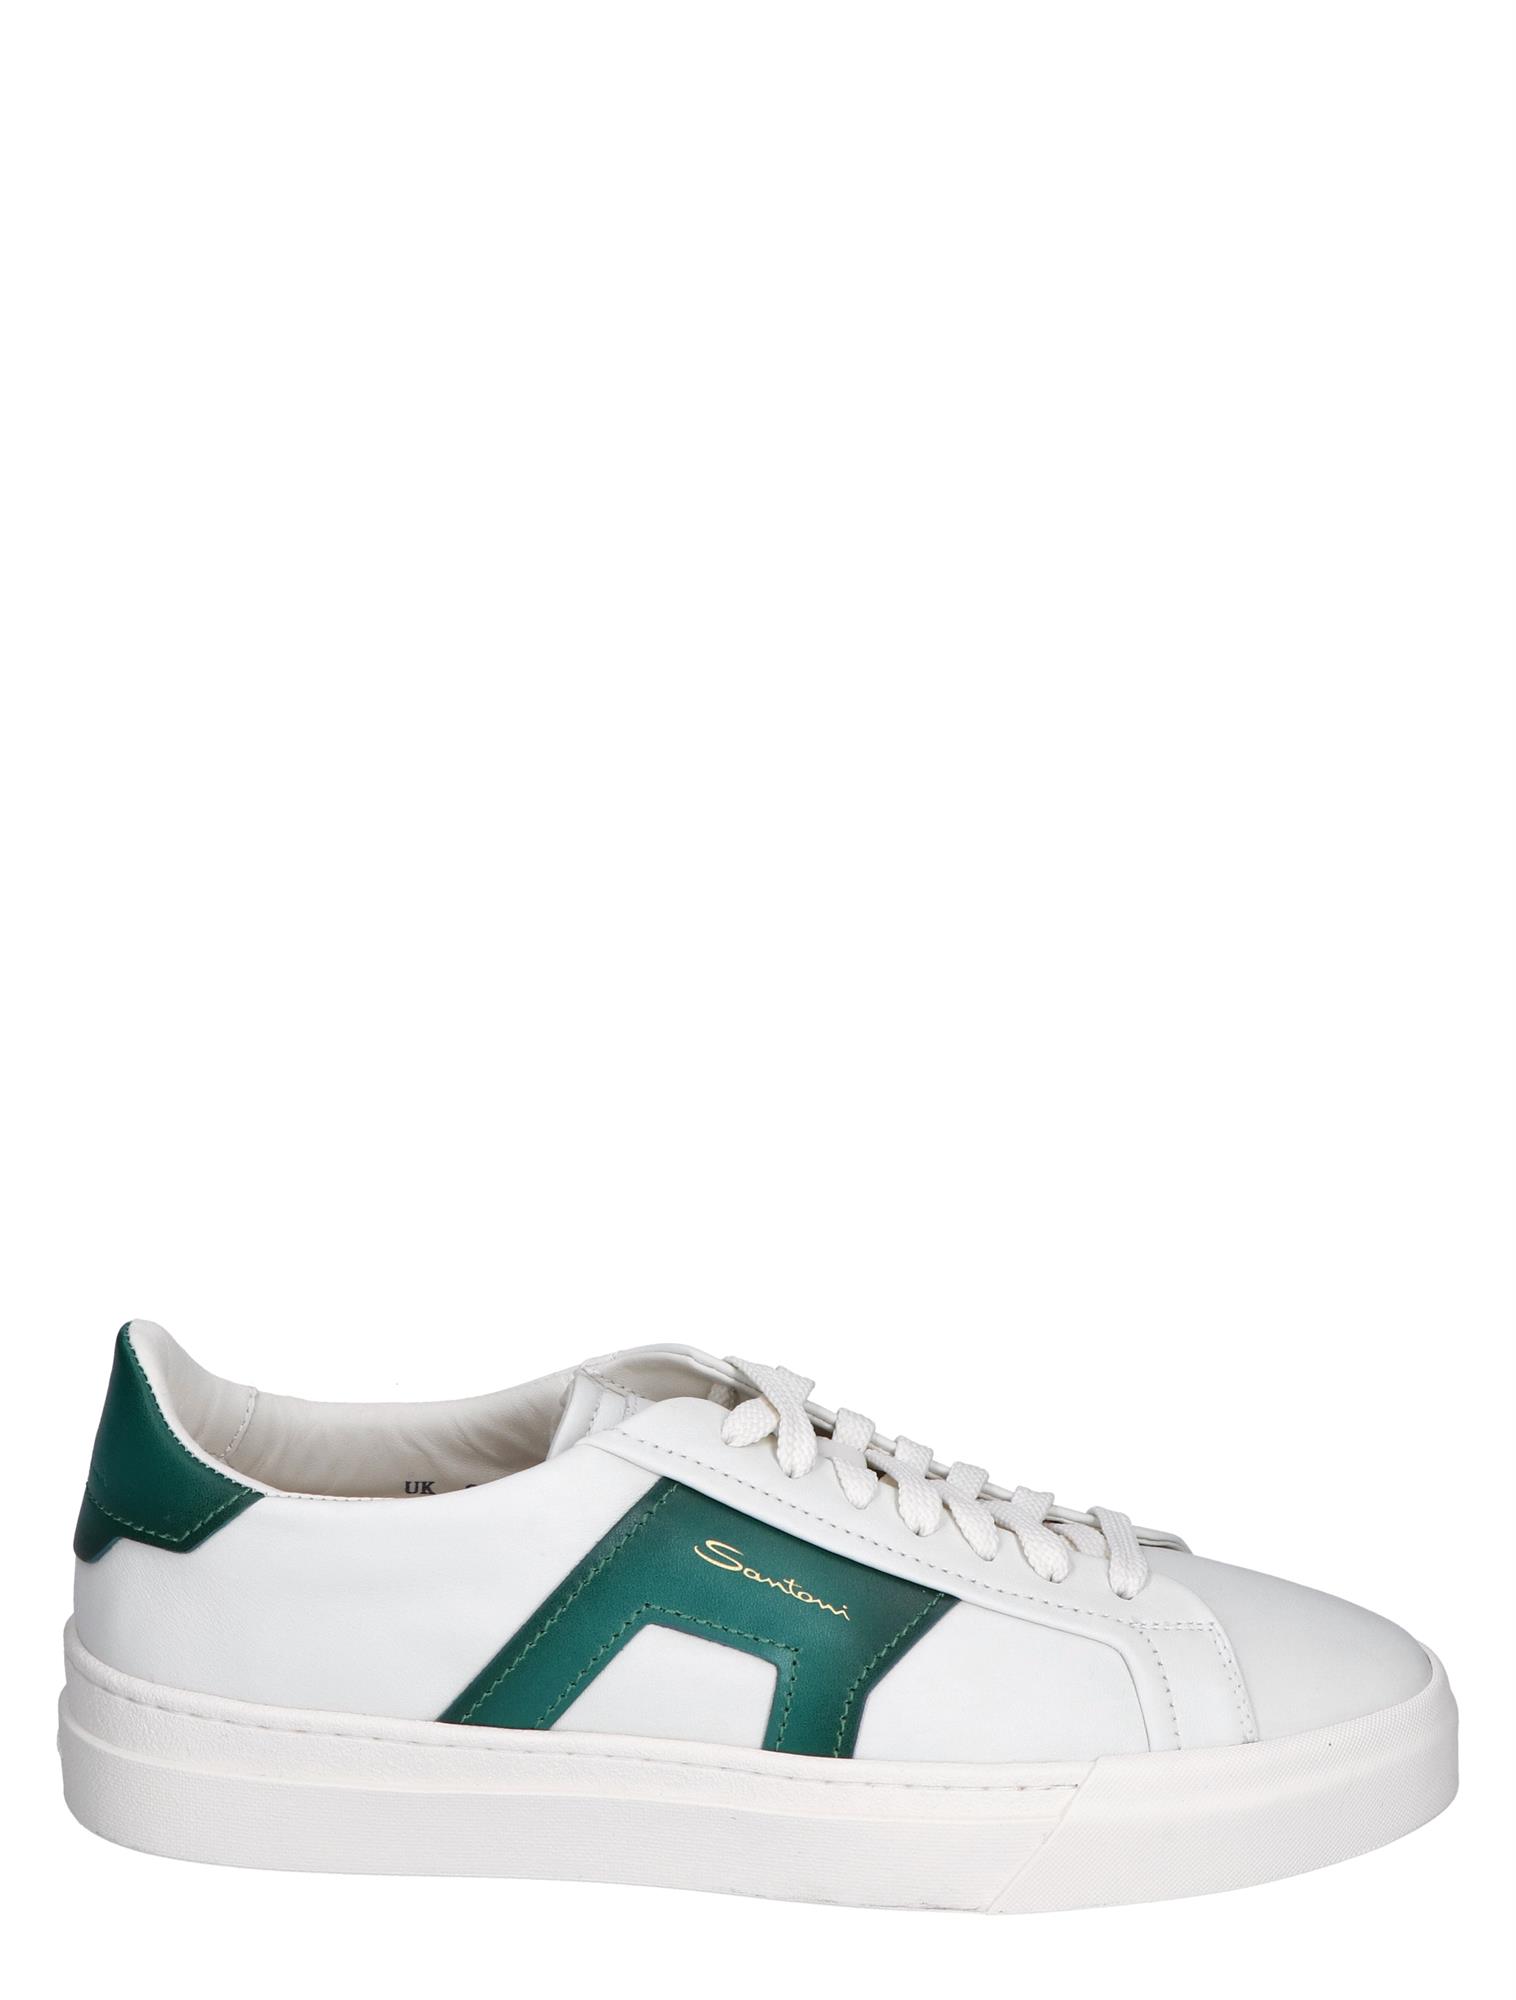 zich zorgen maken Vergevingsgezind antiek Santoni Leather Double Buckle Sneaker White Green | Nolten